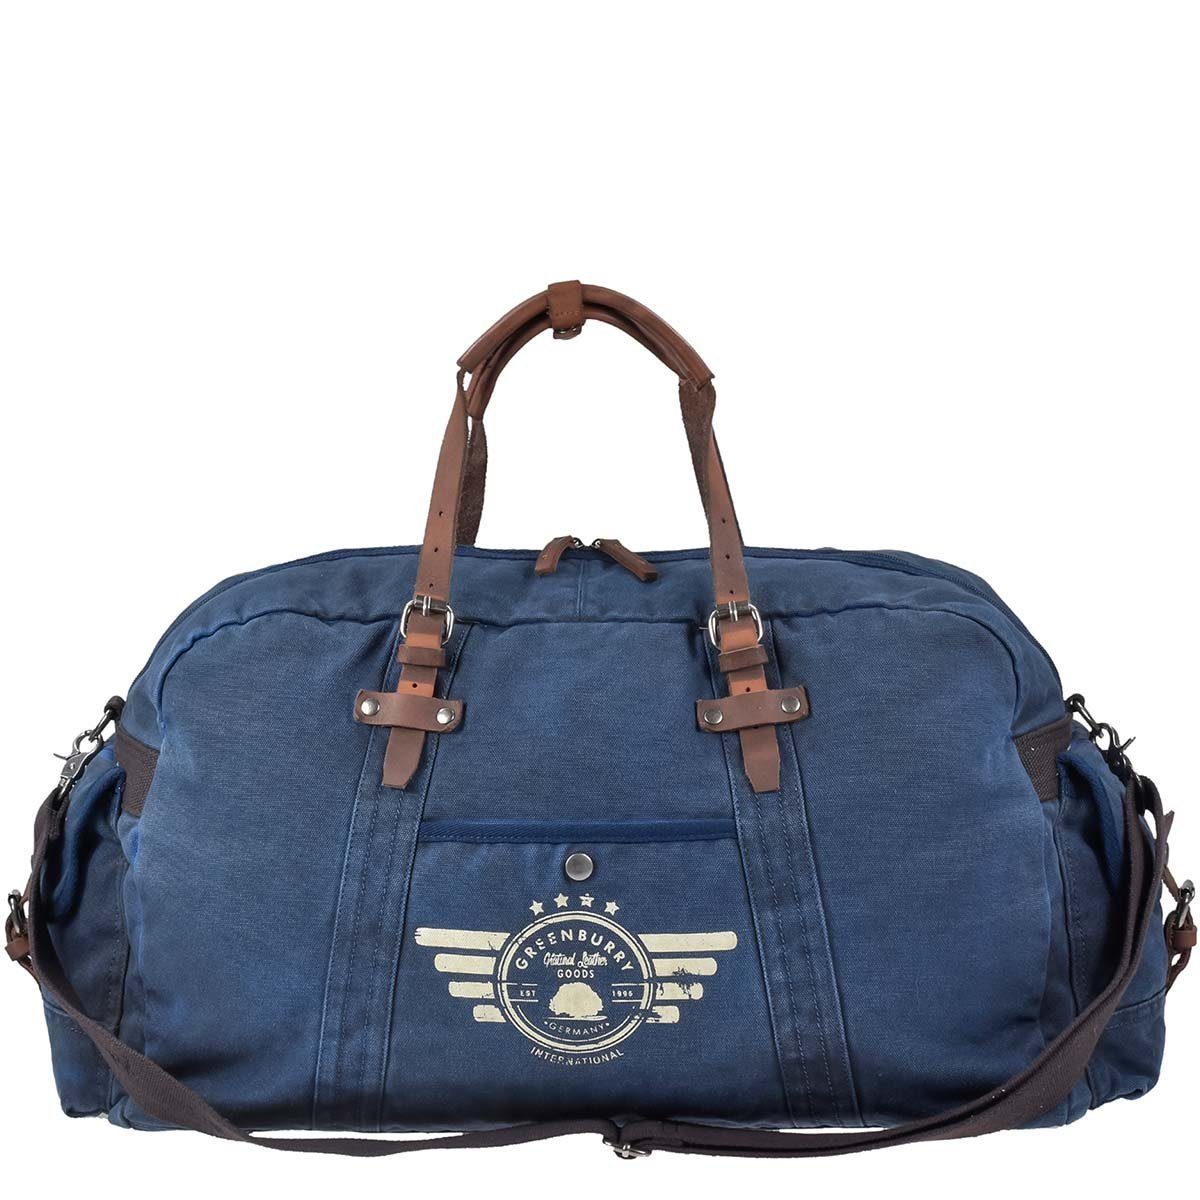 Greenburry Reisetasche Aviator Blue Edition, used Look Canvas mit Lederbesatz, Sporttasche 65cm, Невеликі сумки для поїздок